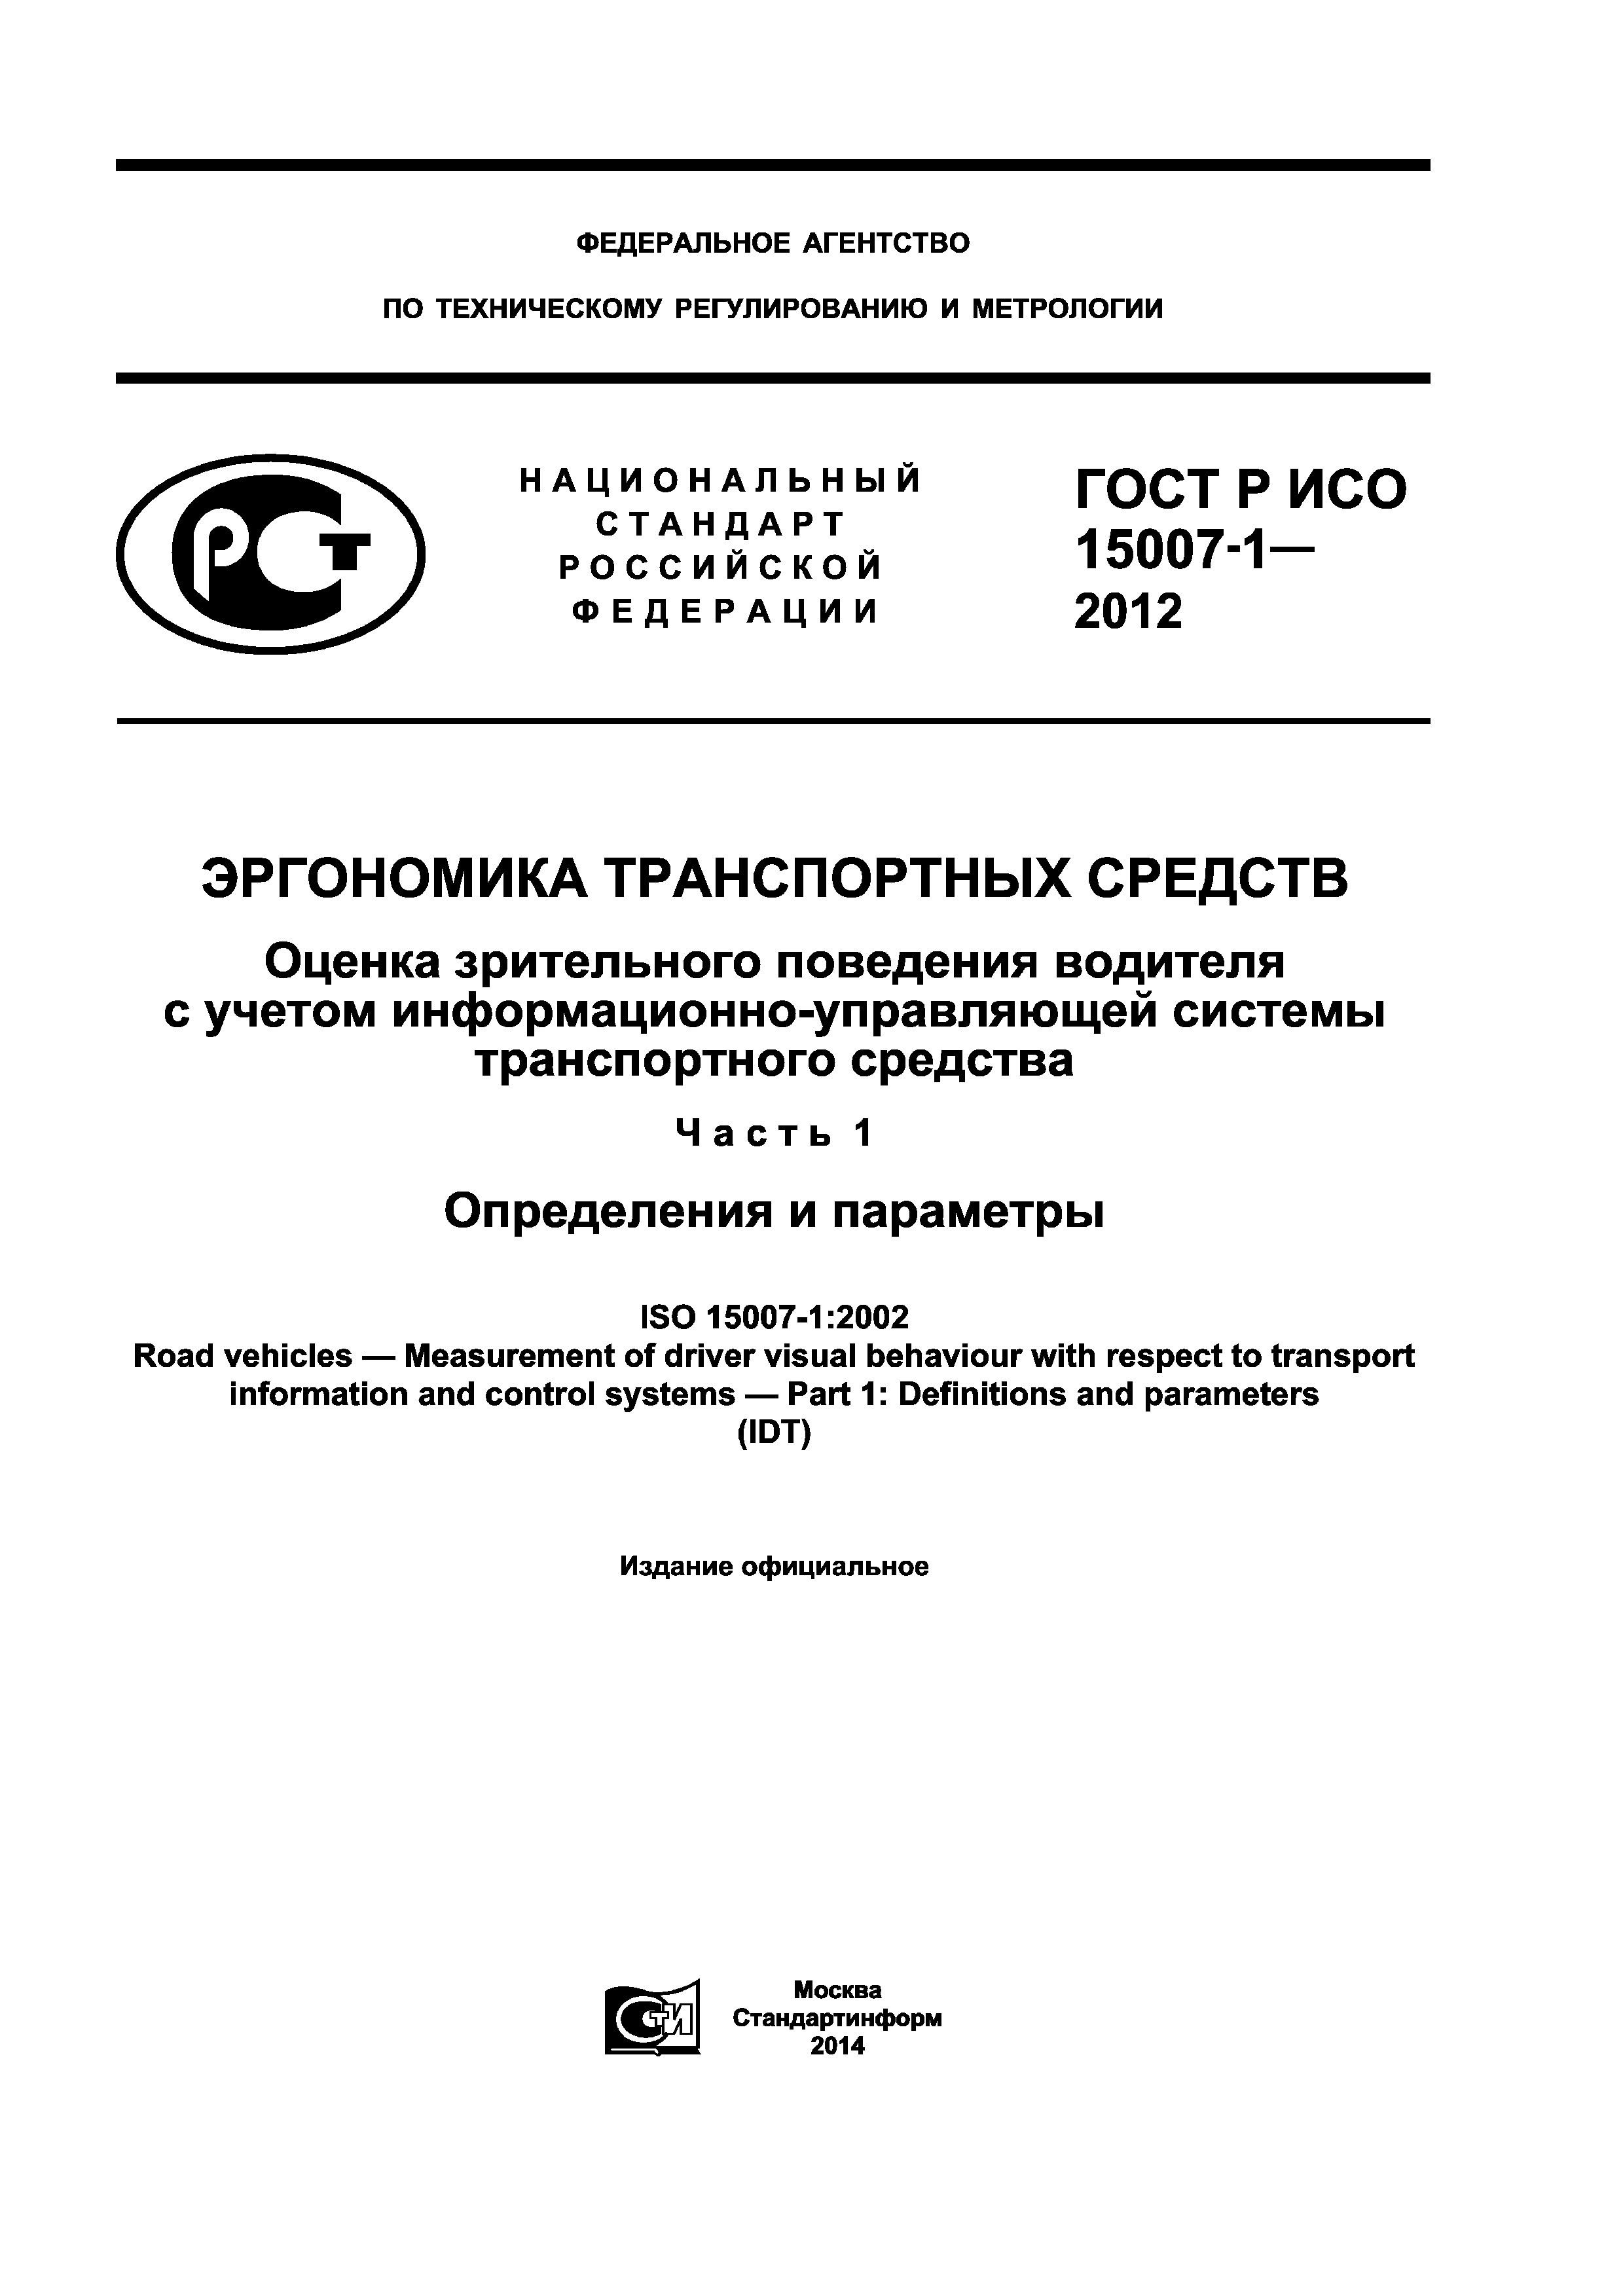 ГОСТ Р ИСО 15007-1-2012